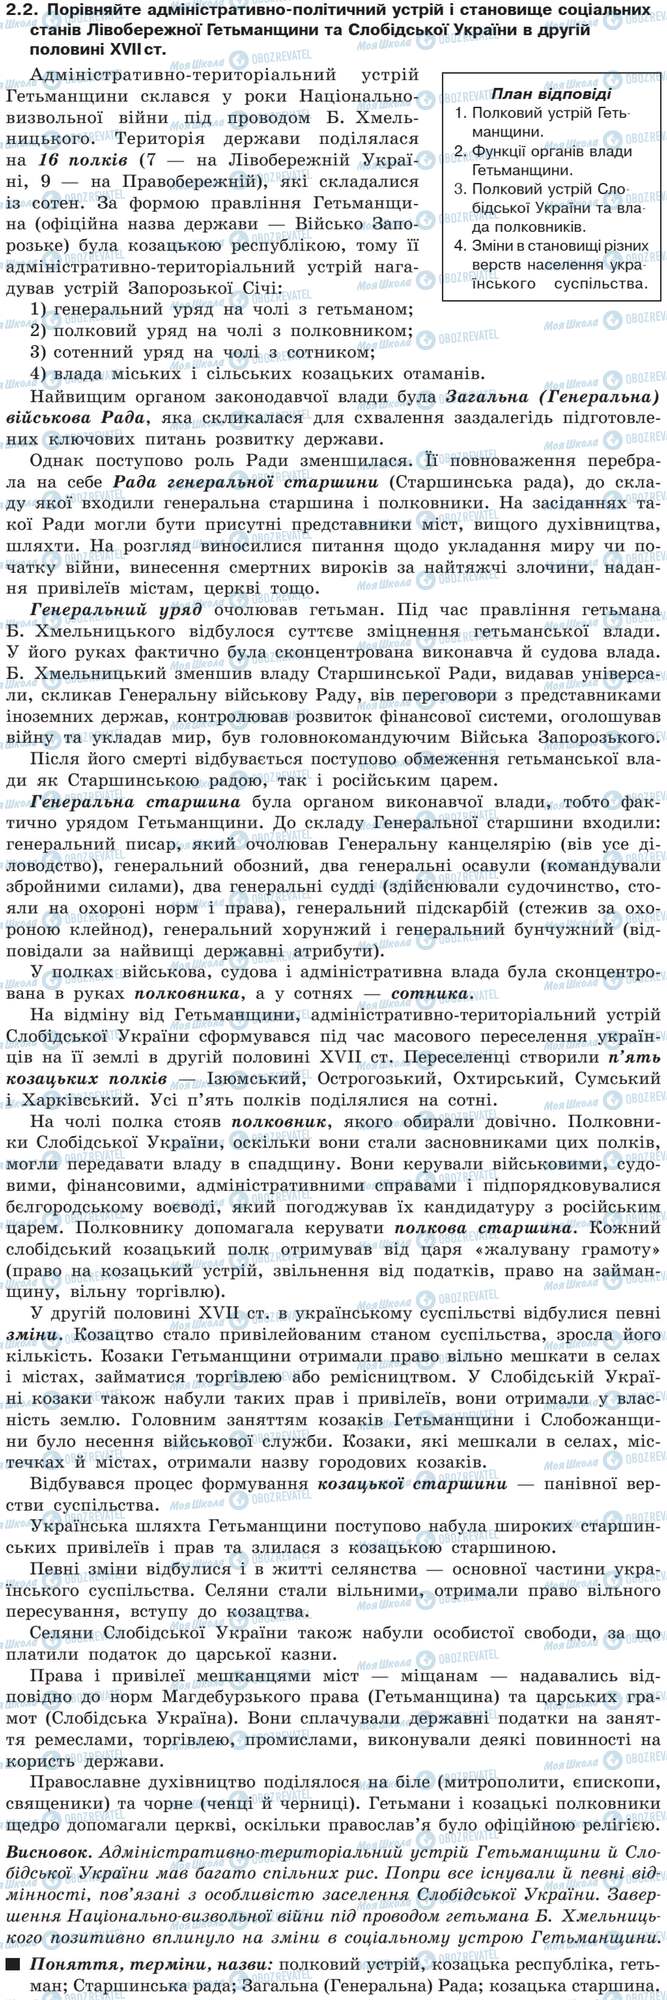 ДПА История Украины 9 класс страница 2.2